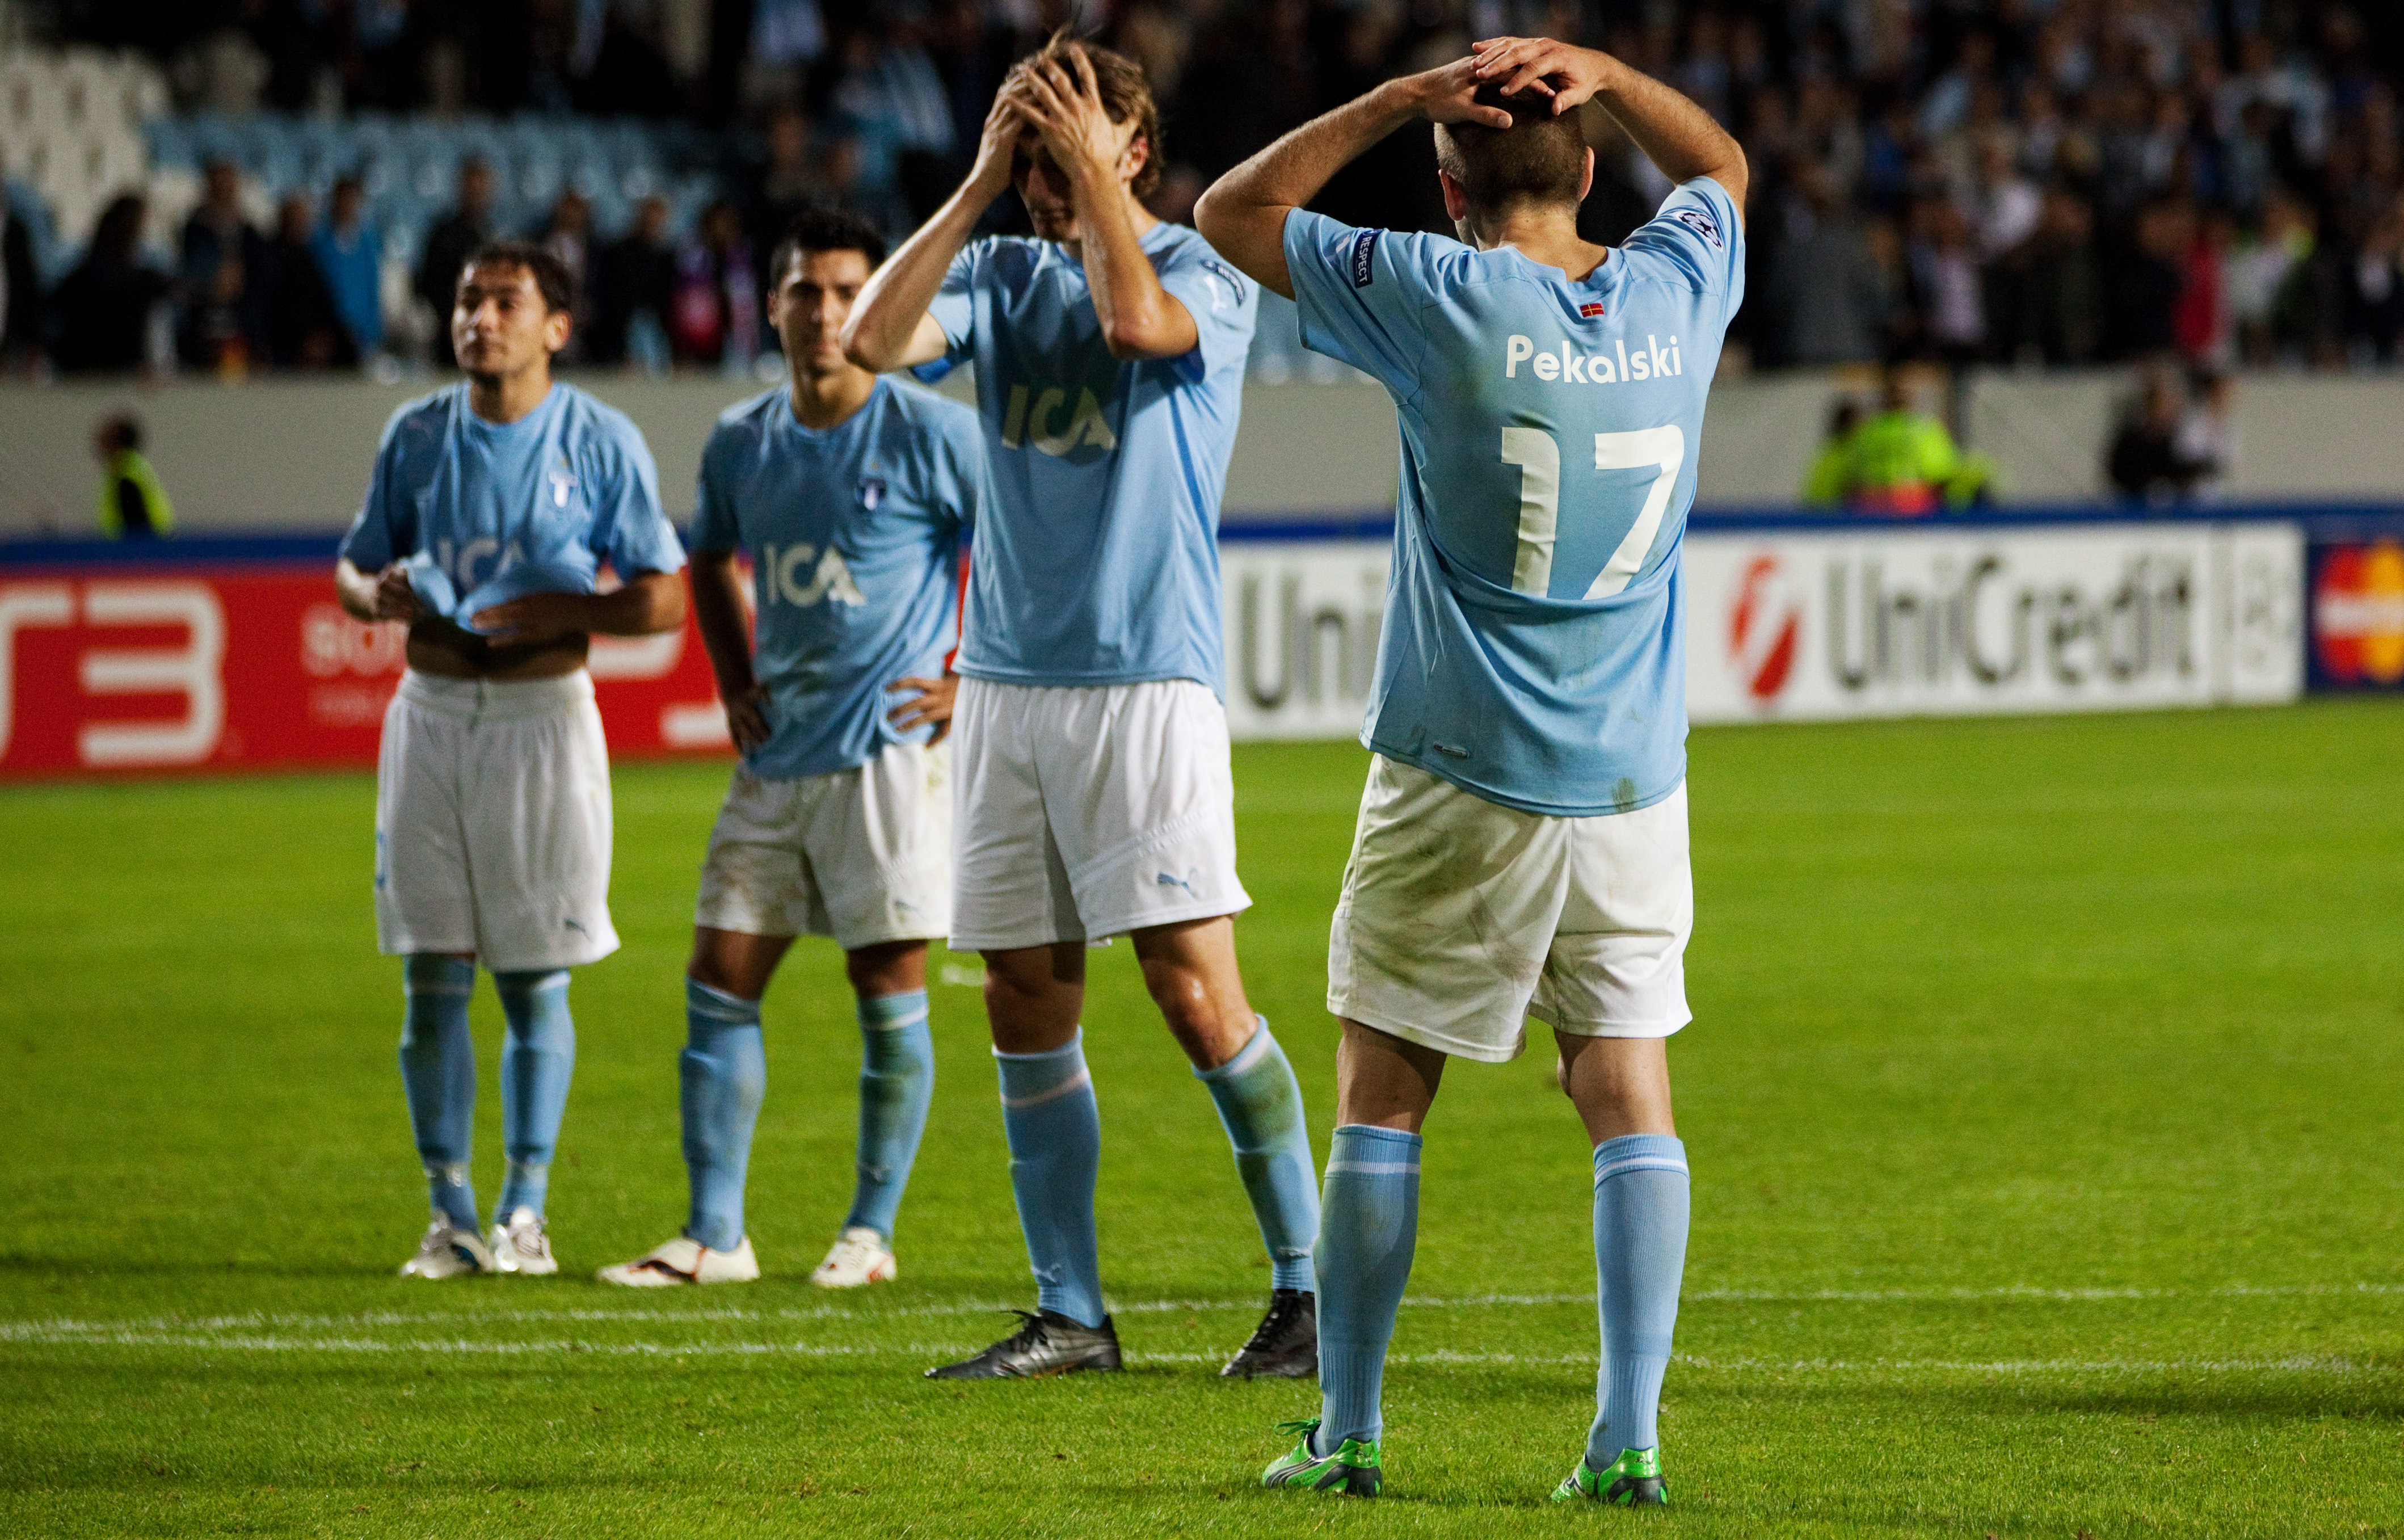 Malmö FF:s spelare lär få det tufft i Europa Leagues gruppspel.